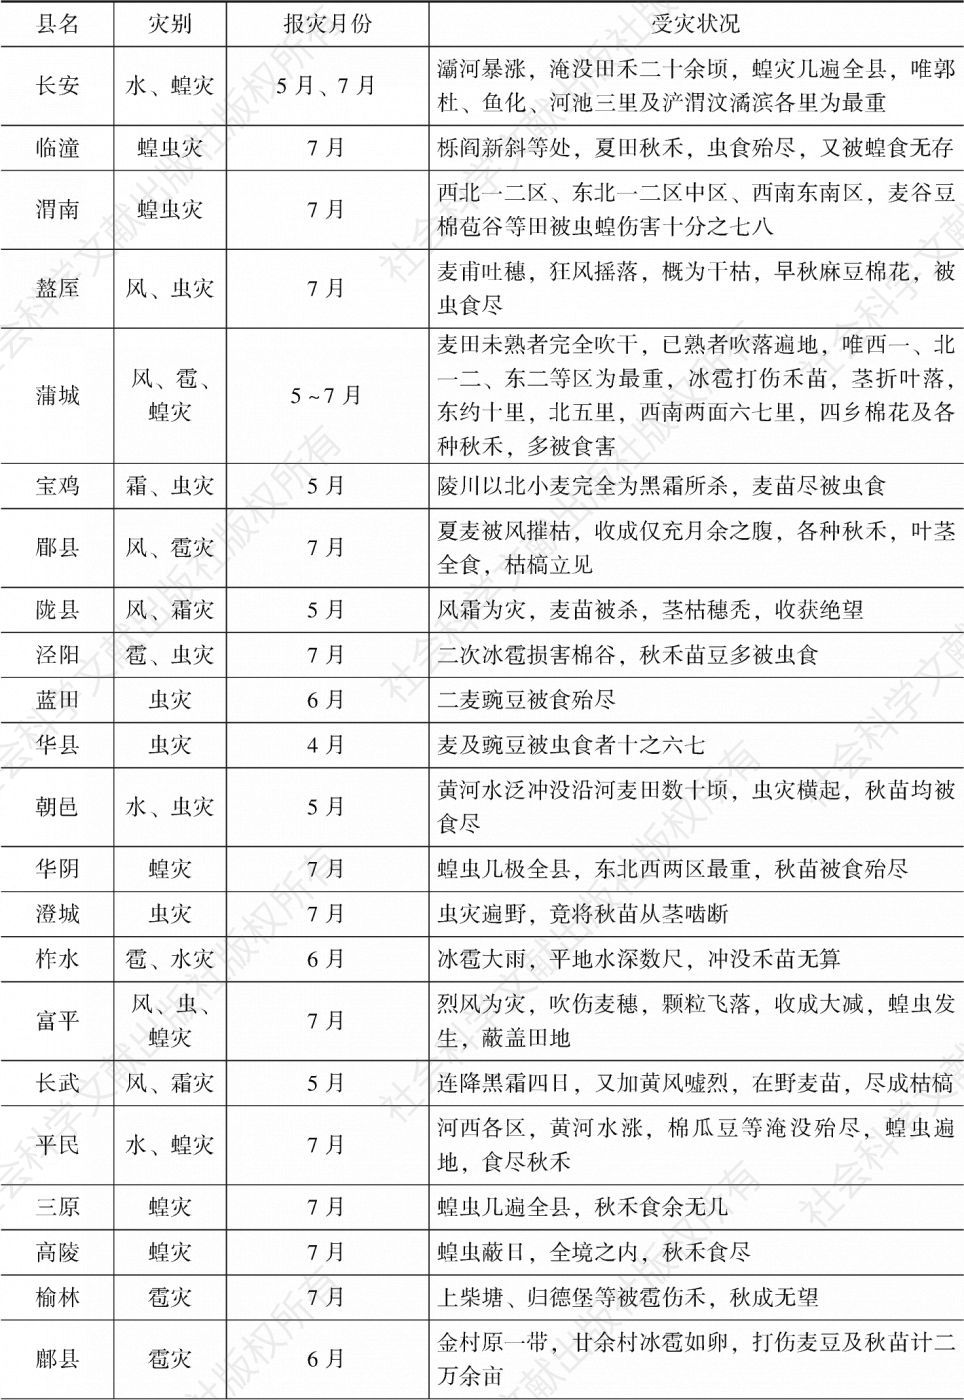 表2-16 1930年陕西各县灾况一览